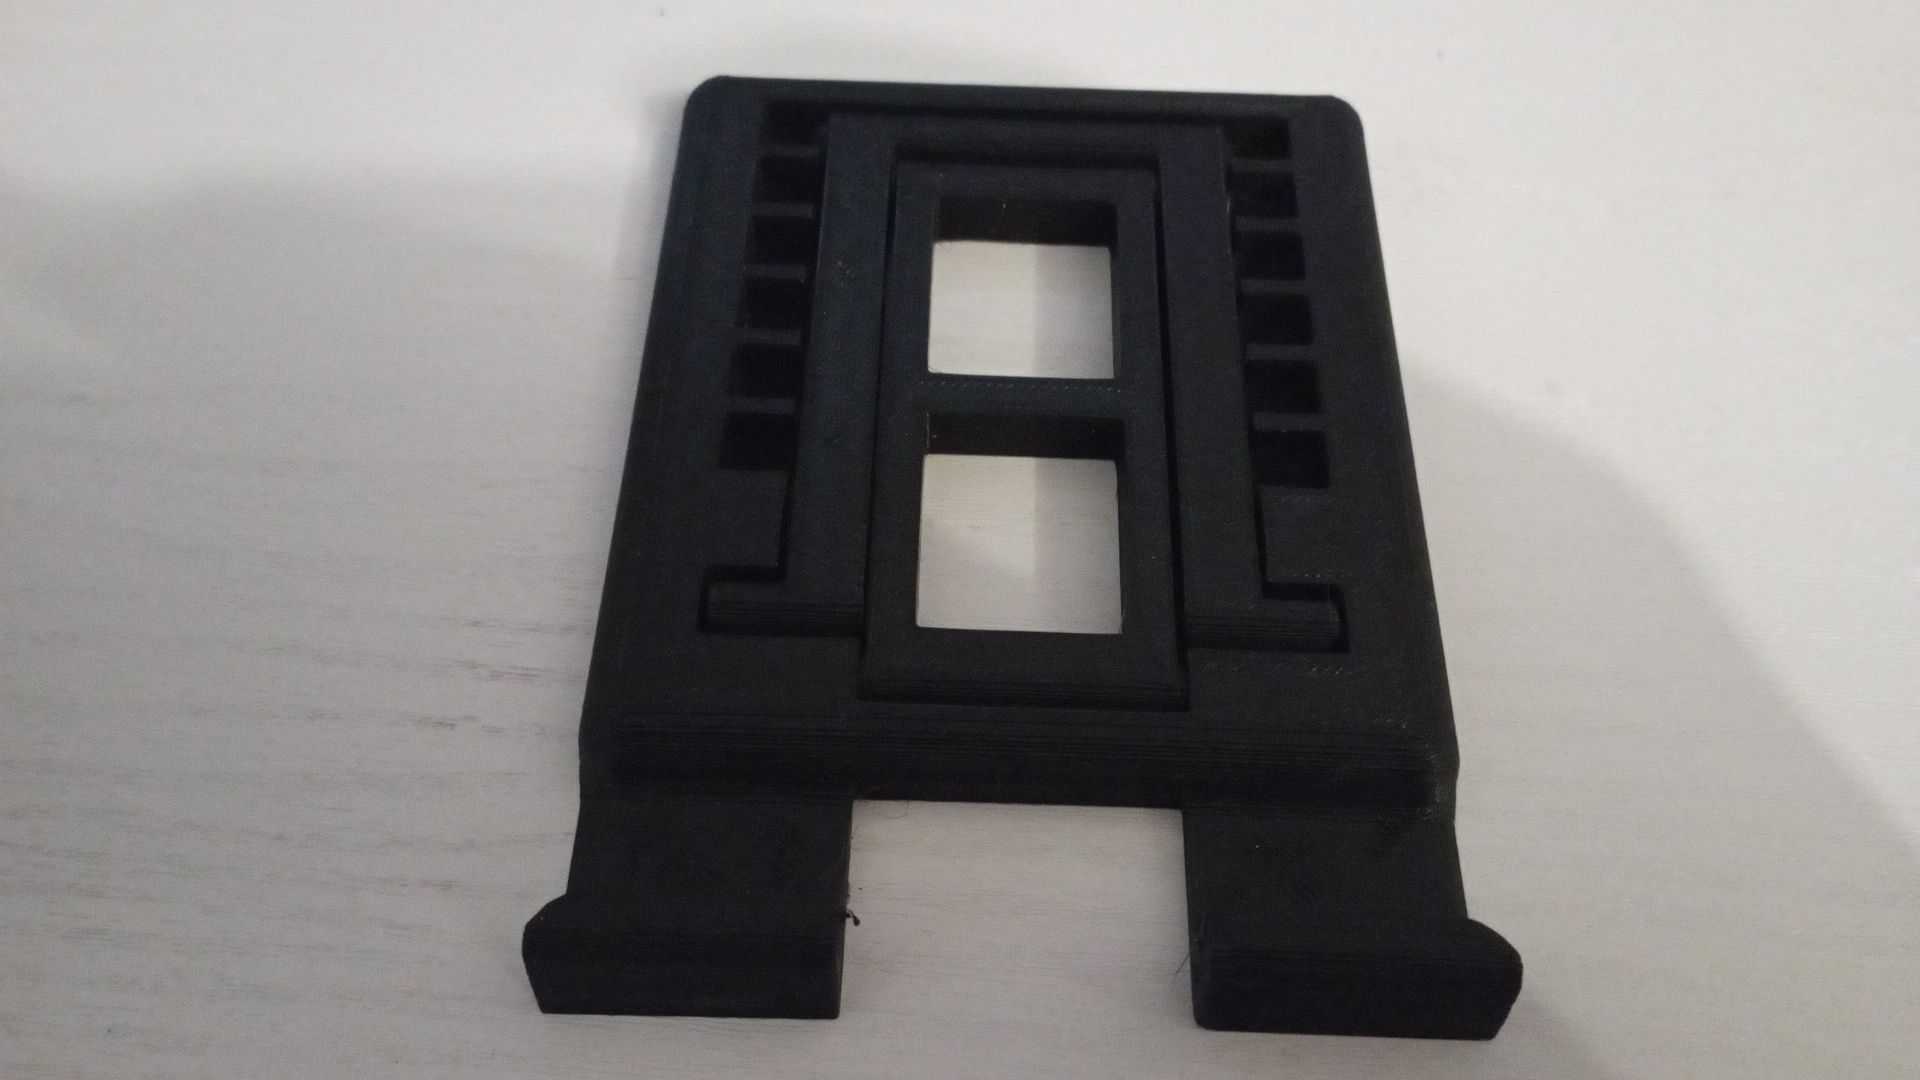 Suport telefon pliabil printat 3D